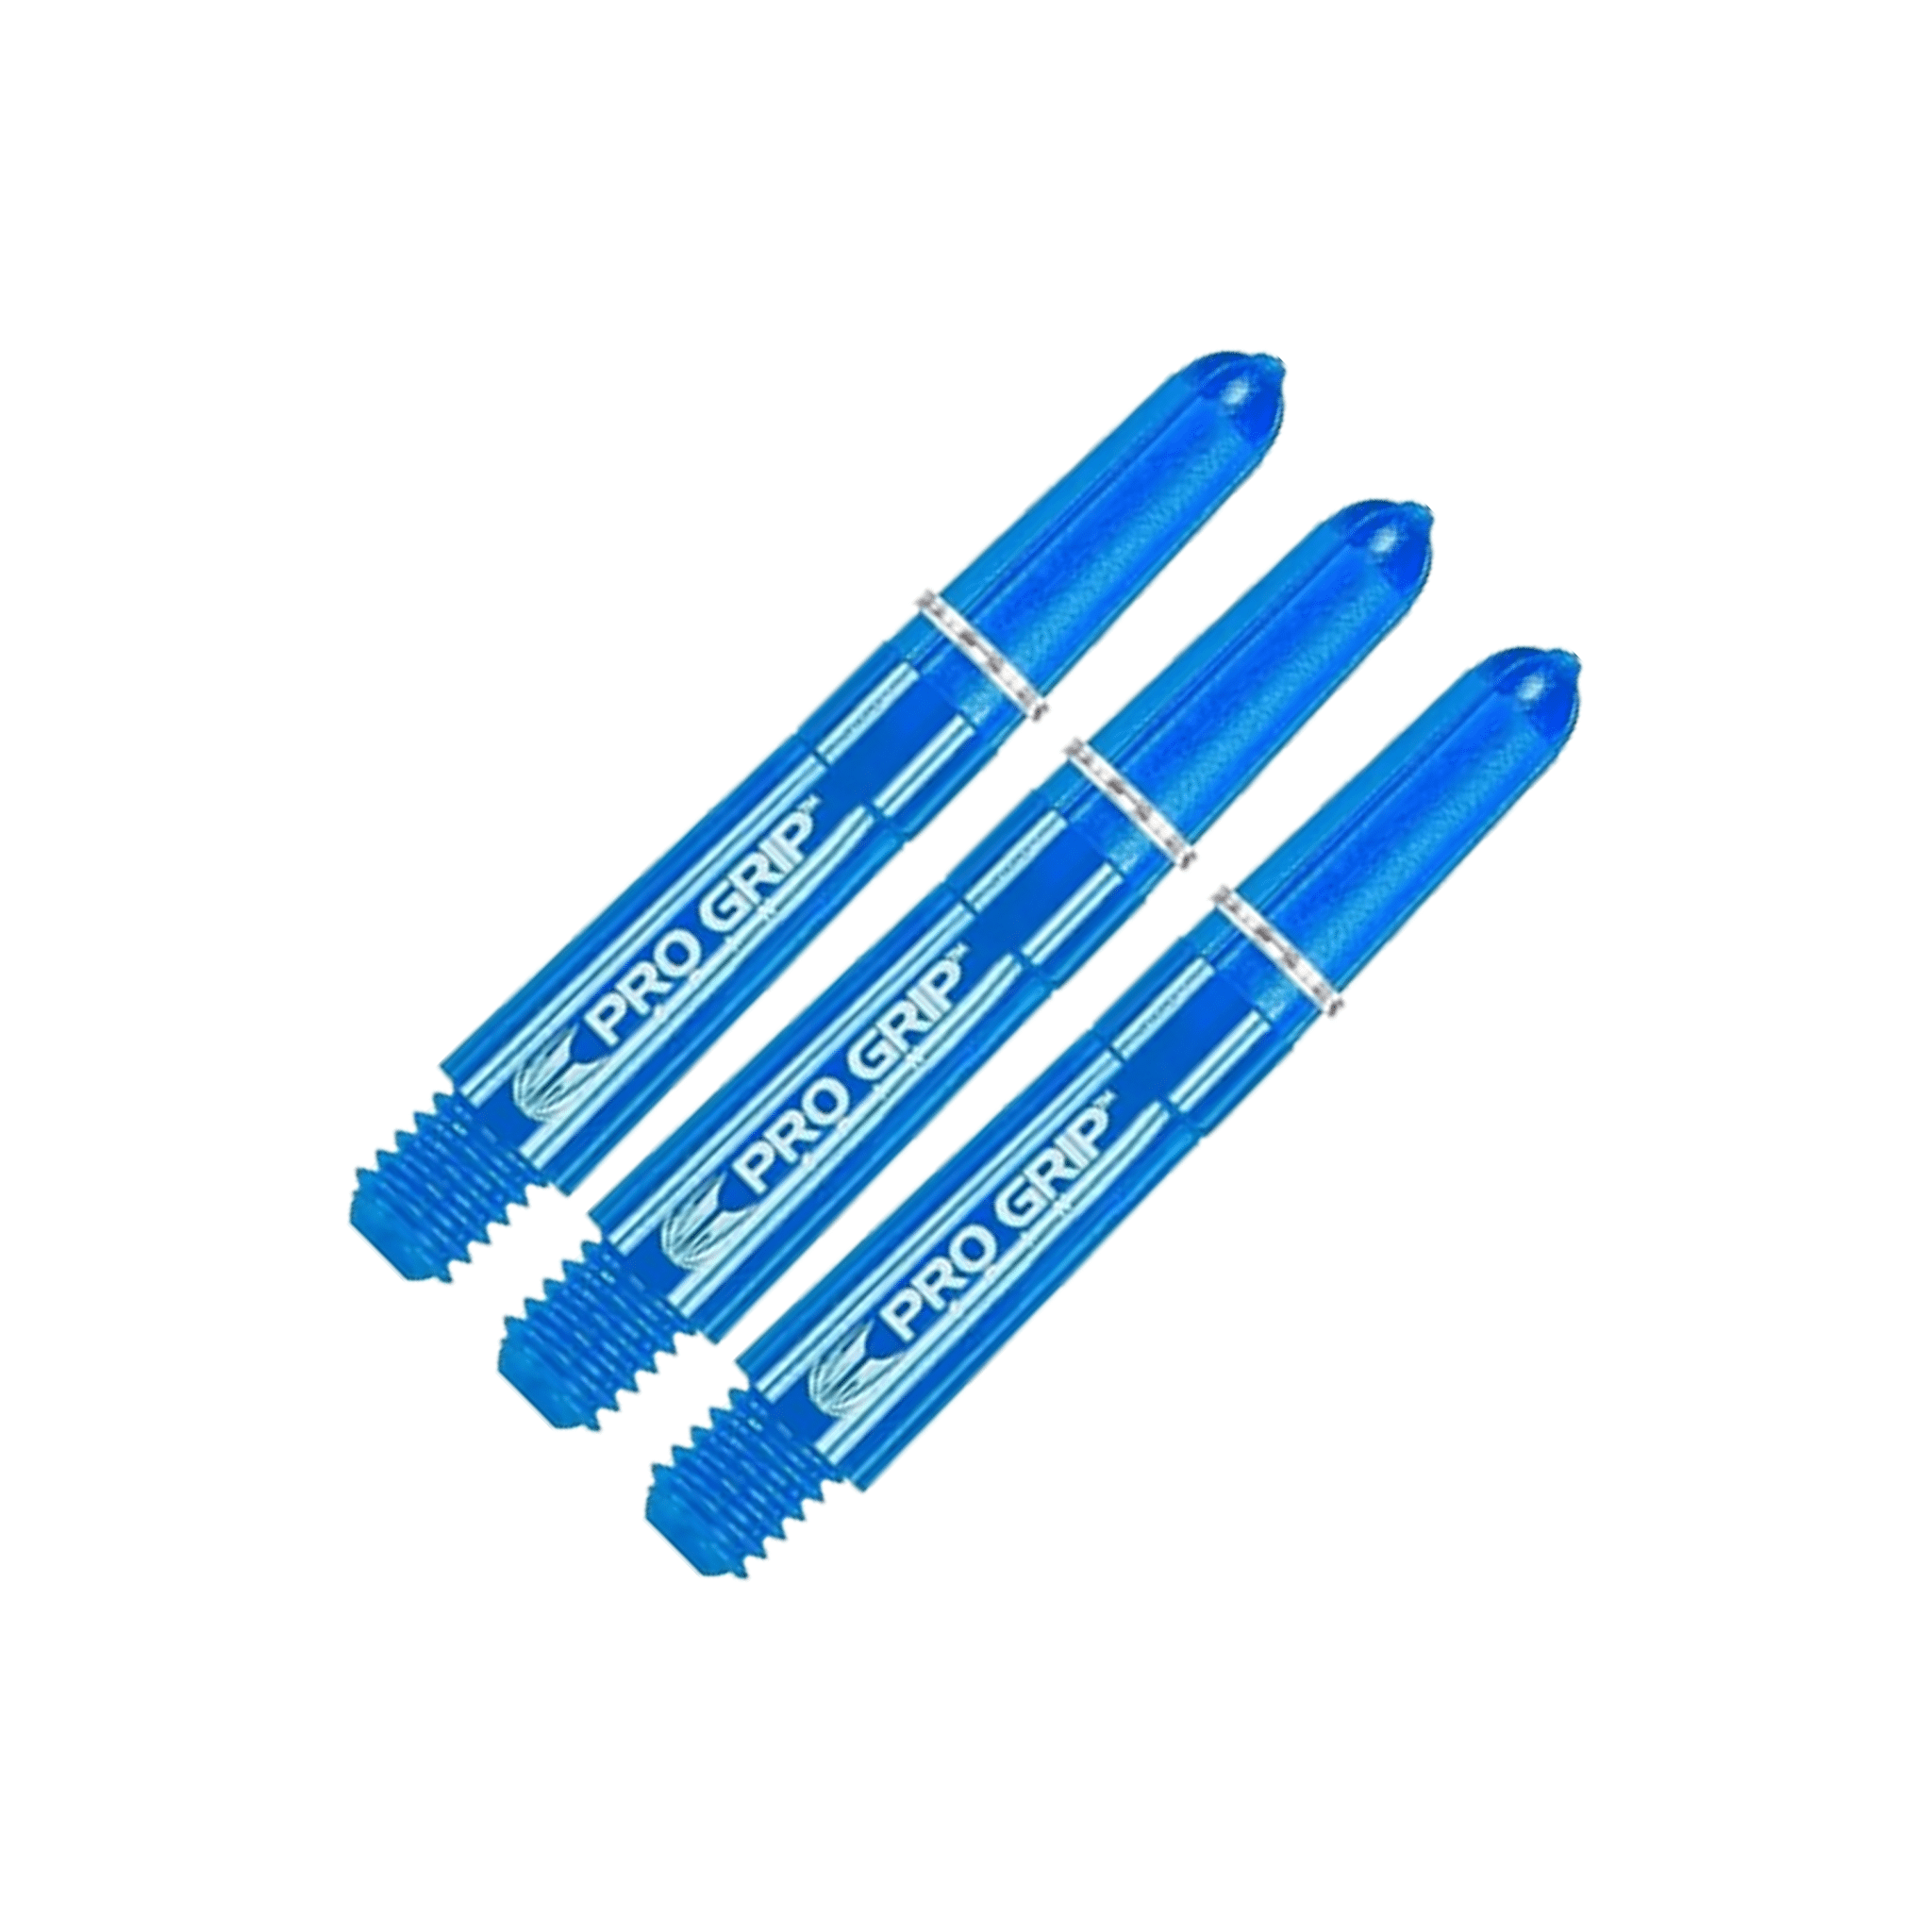 Target Pro Grip Spin - Nylon Dart Shafts Short (34mm) / Blue Shafts